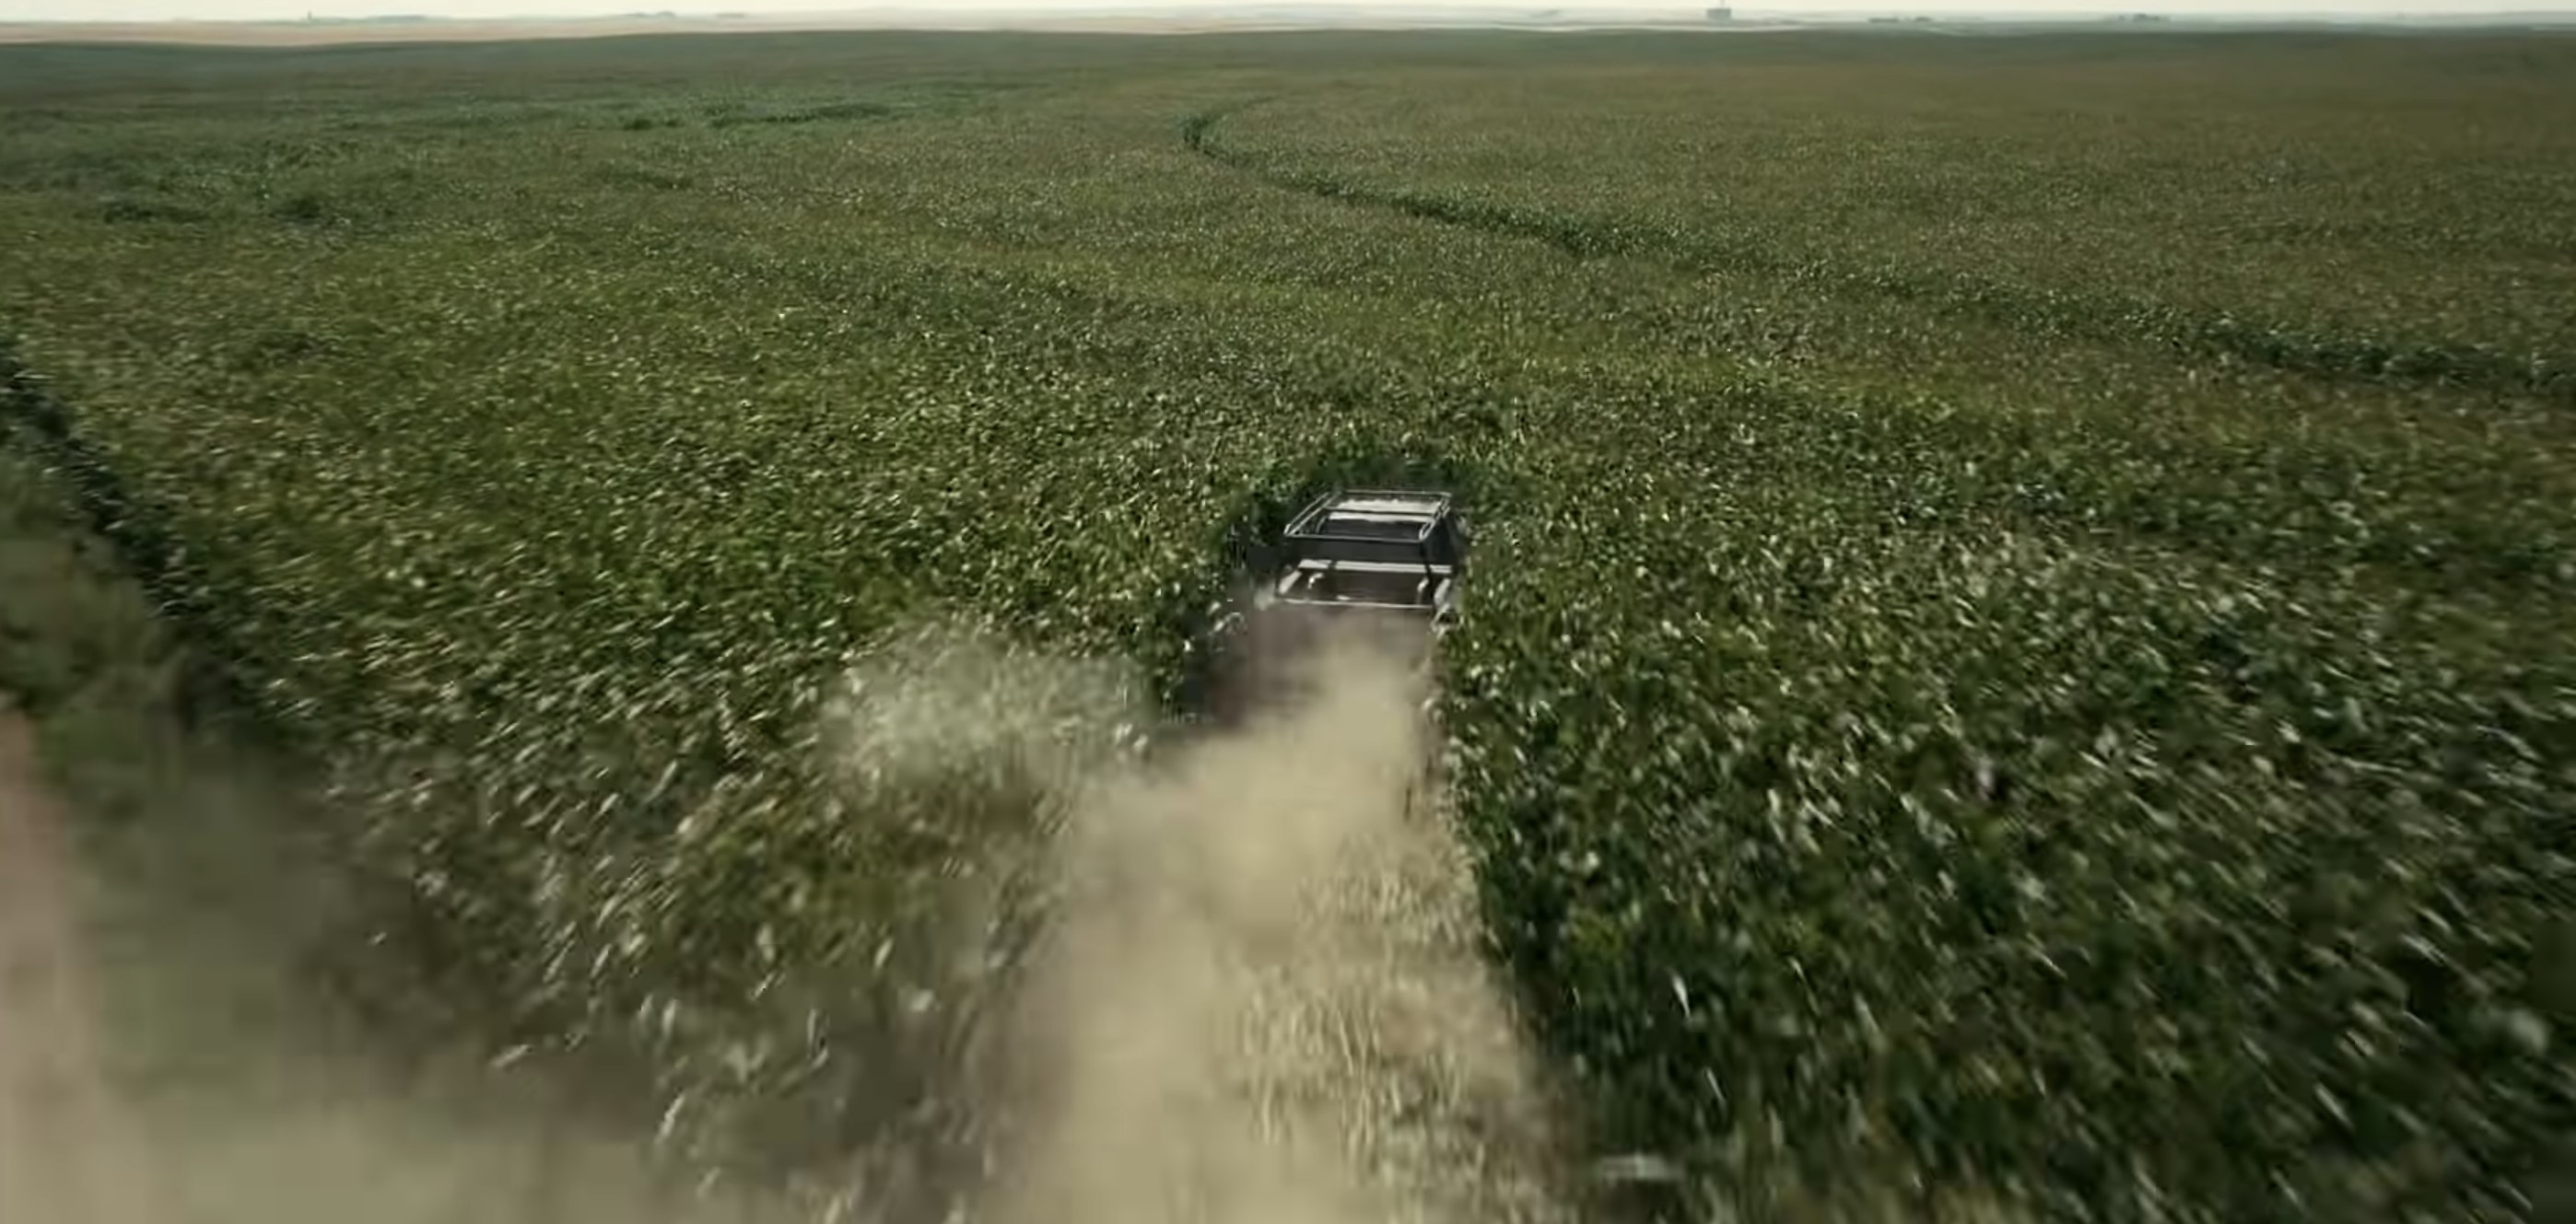 A pickup truck plows through a cornfield